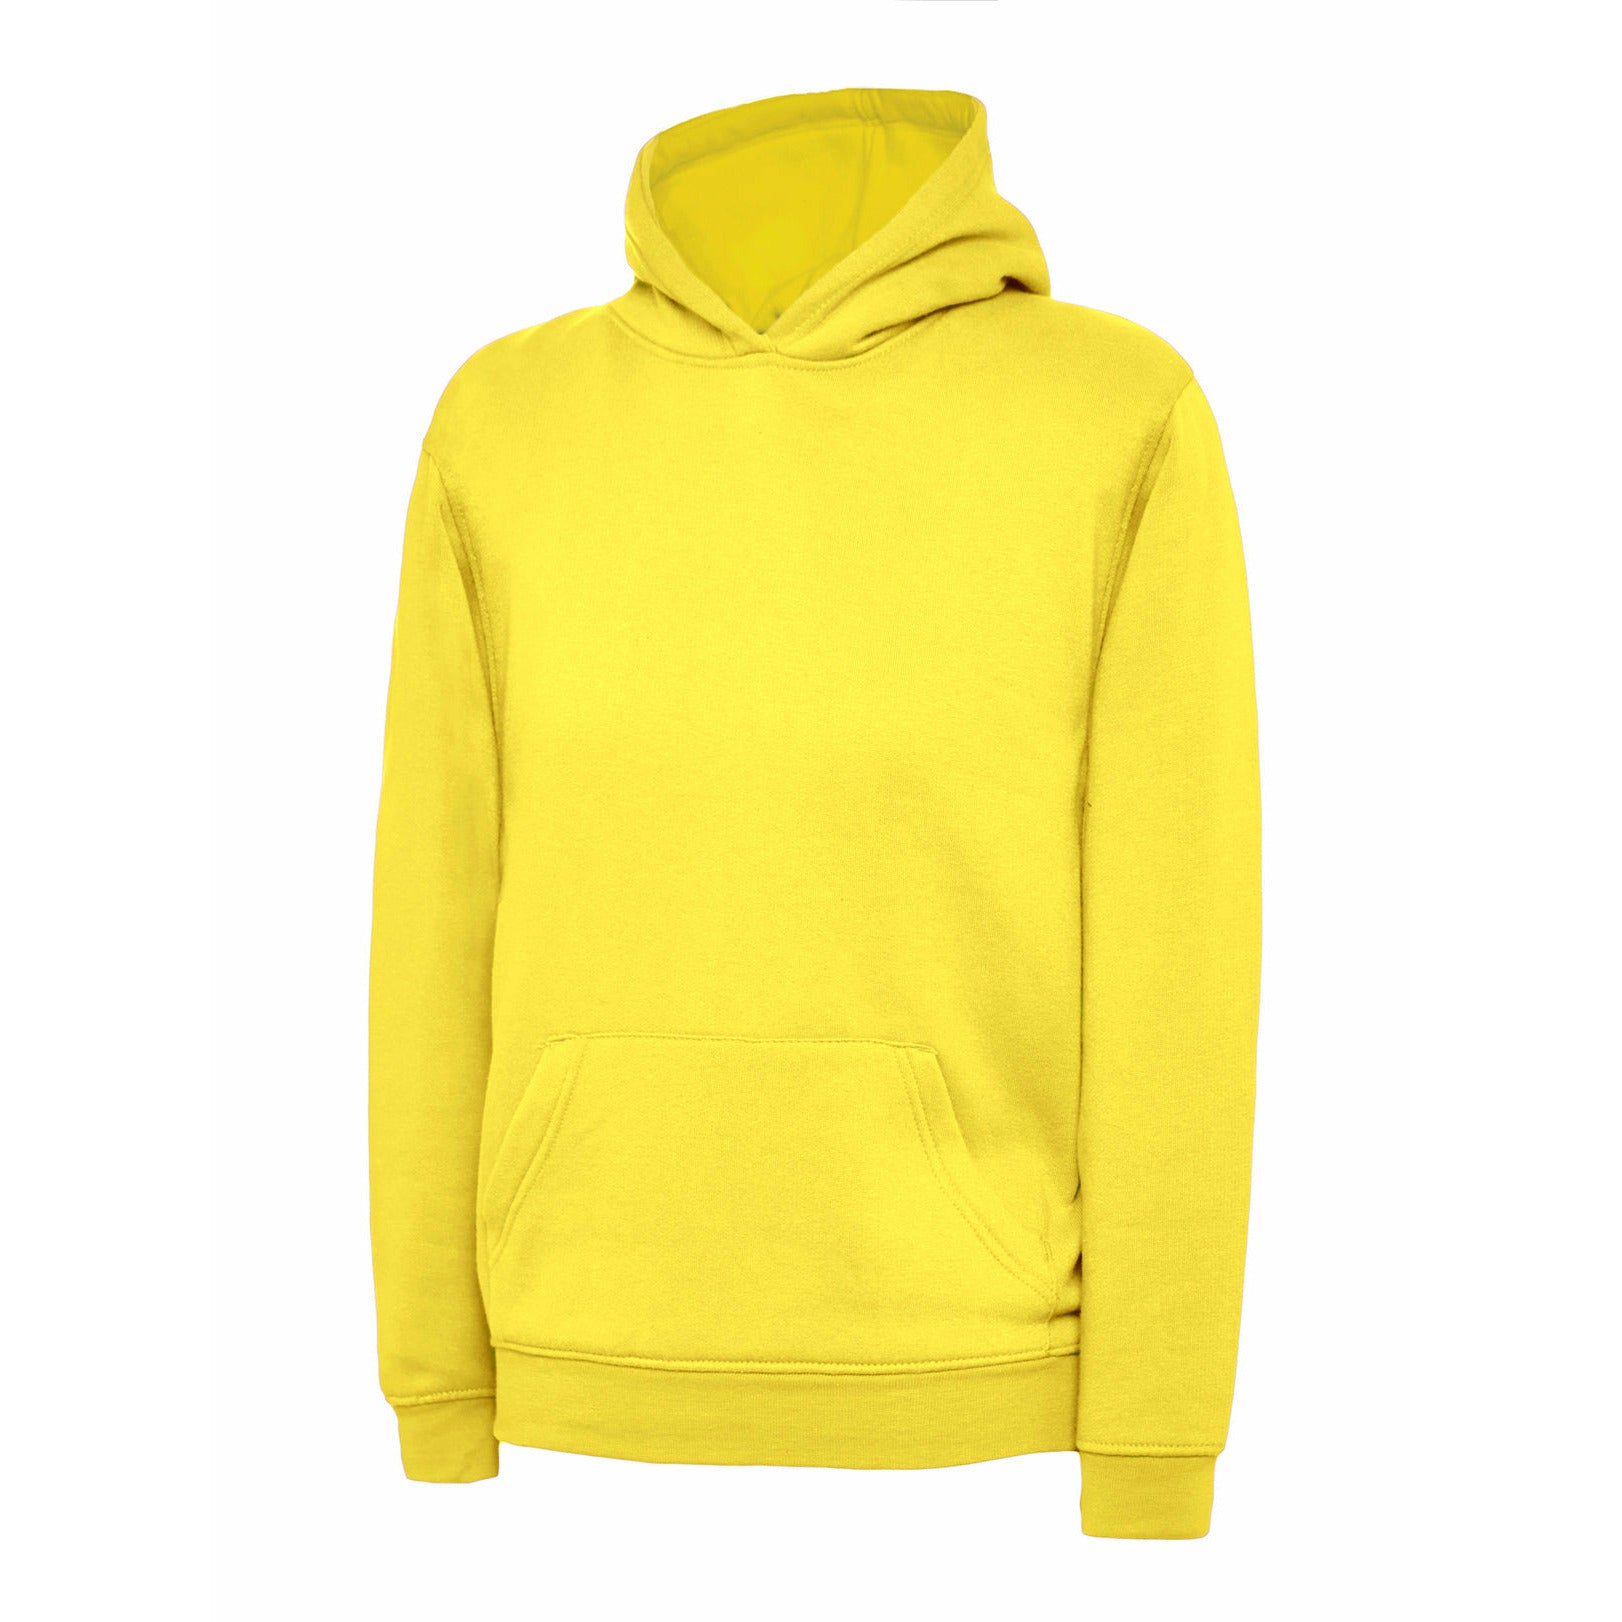 Childrens Hooded Sweatshirt (2 - 4 YRS) Yellow